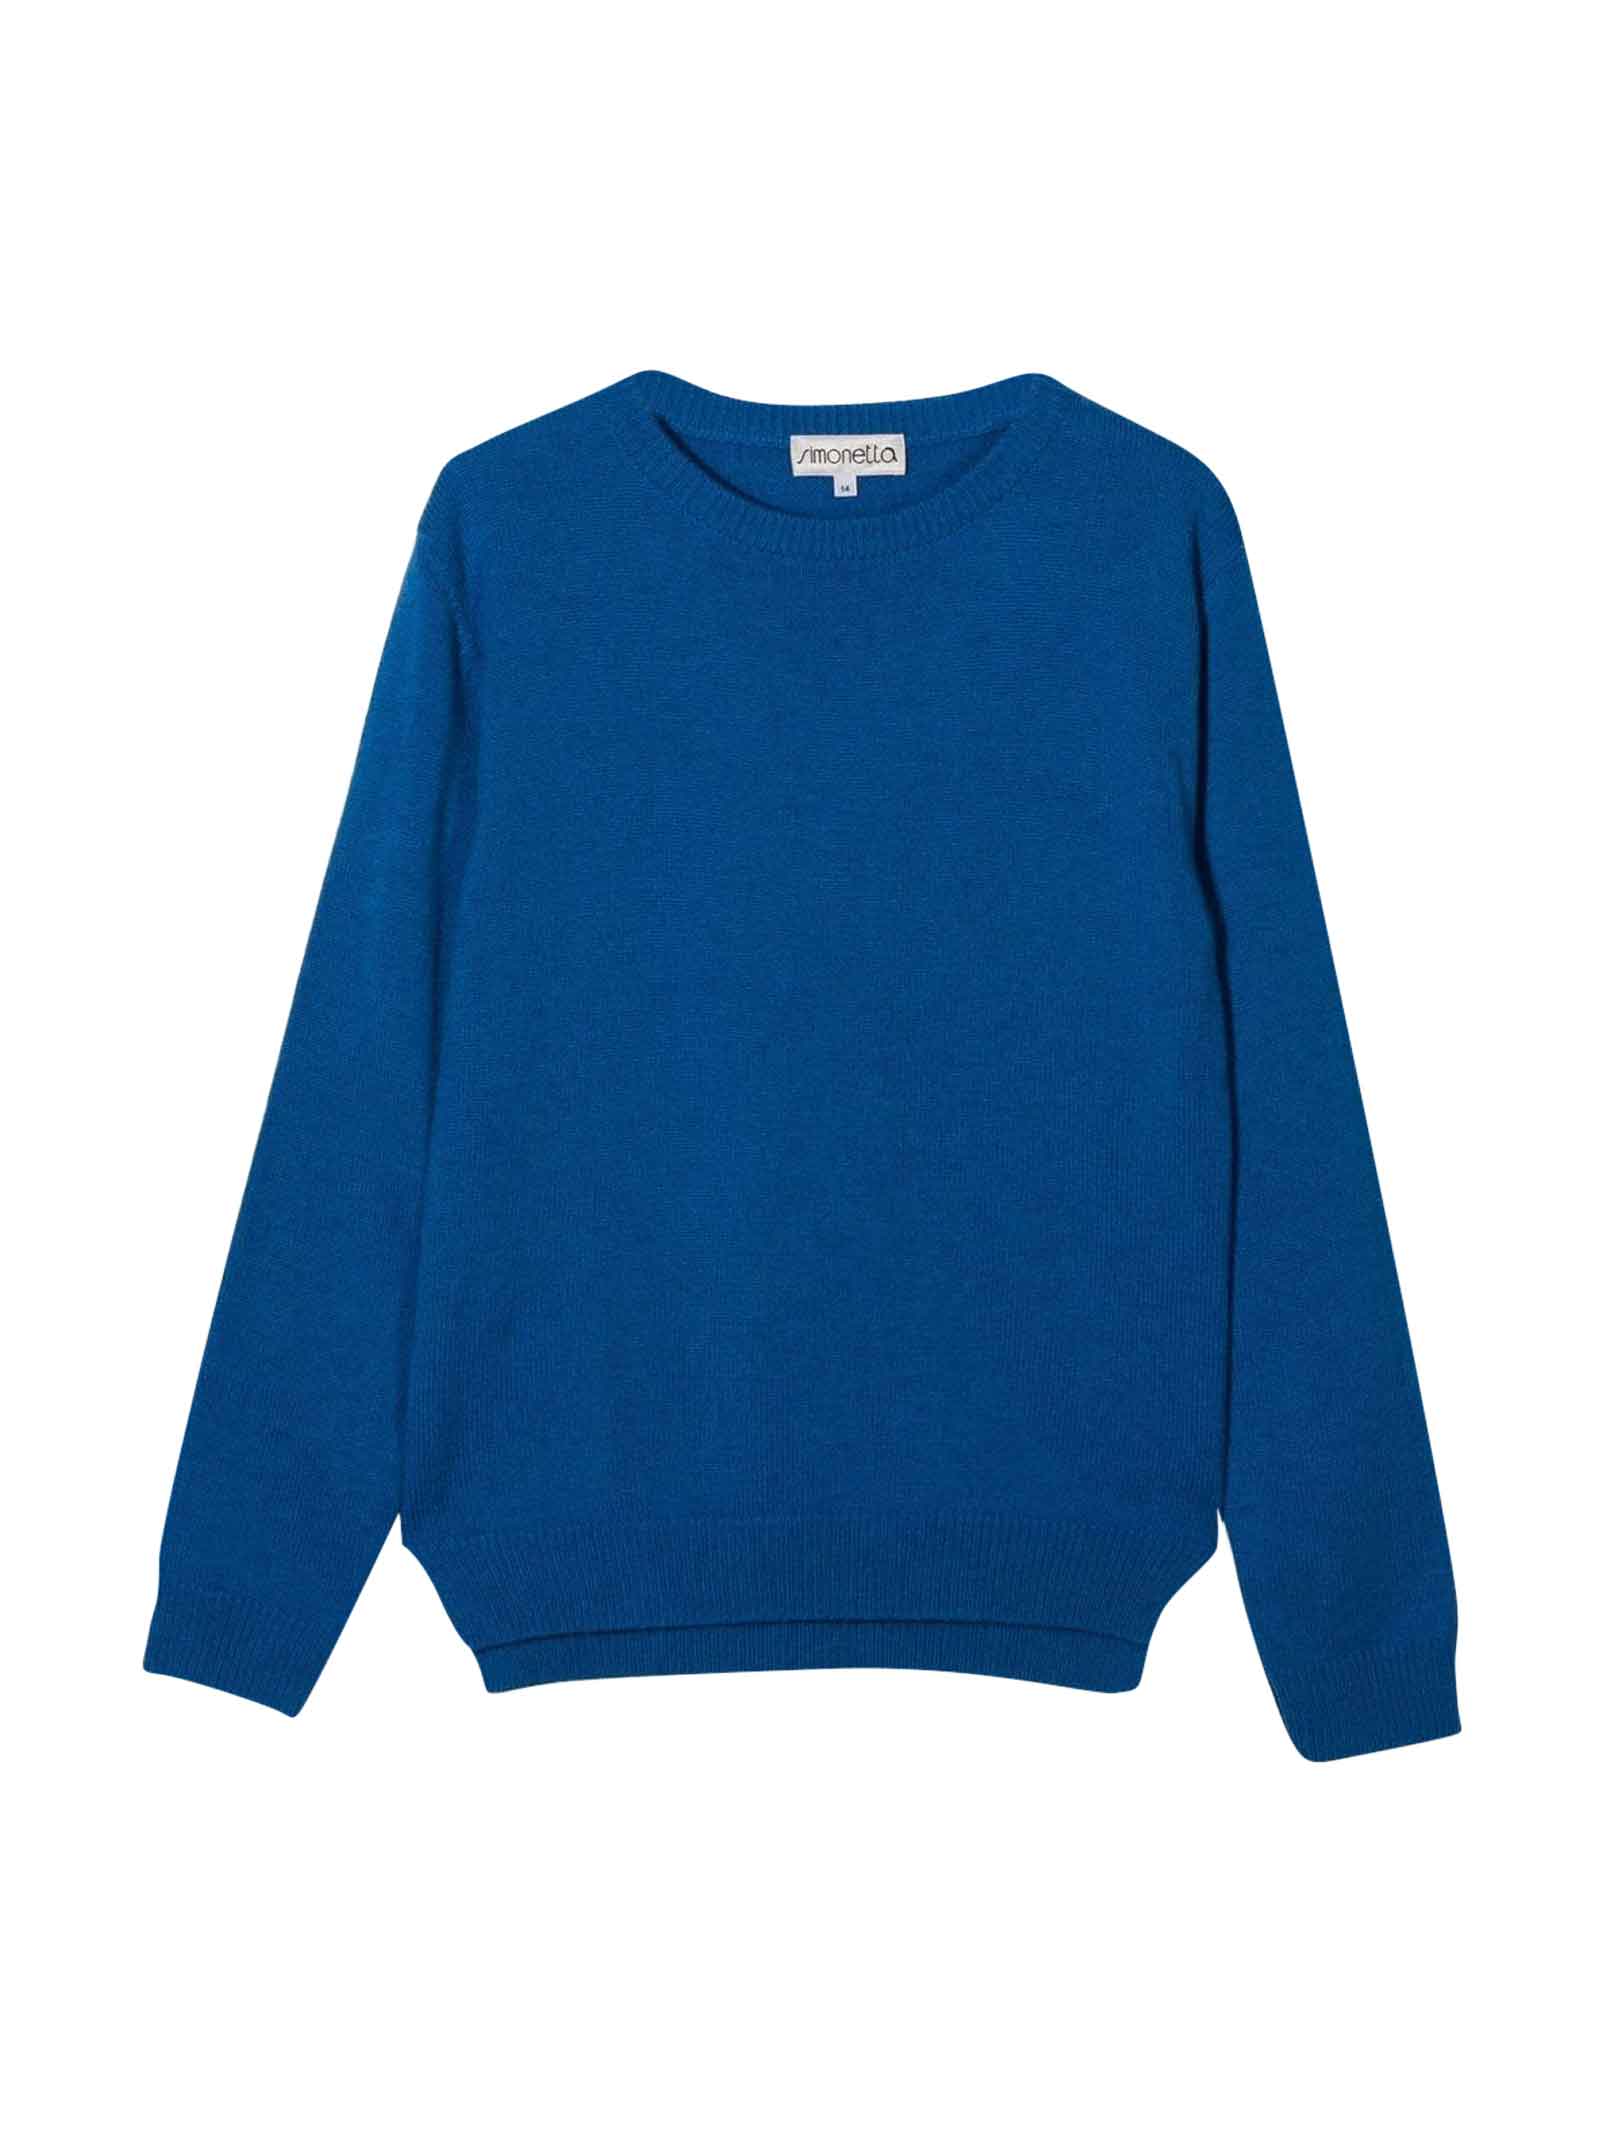 Simonetta Blue Sweater Girl